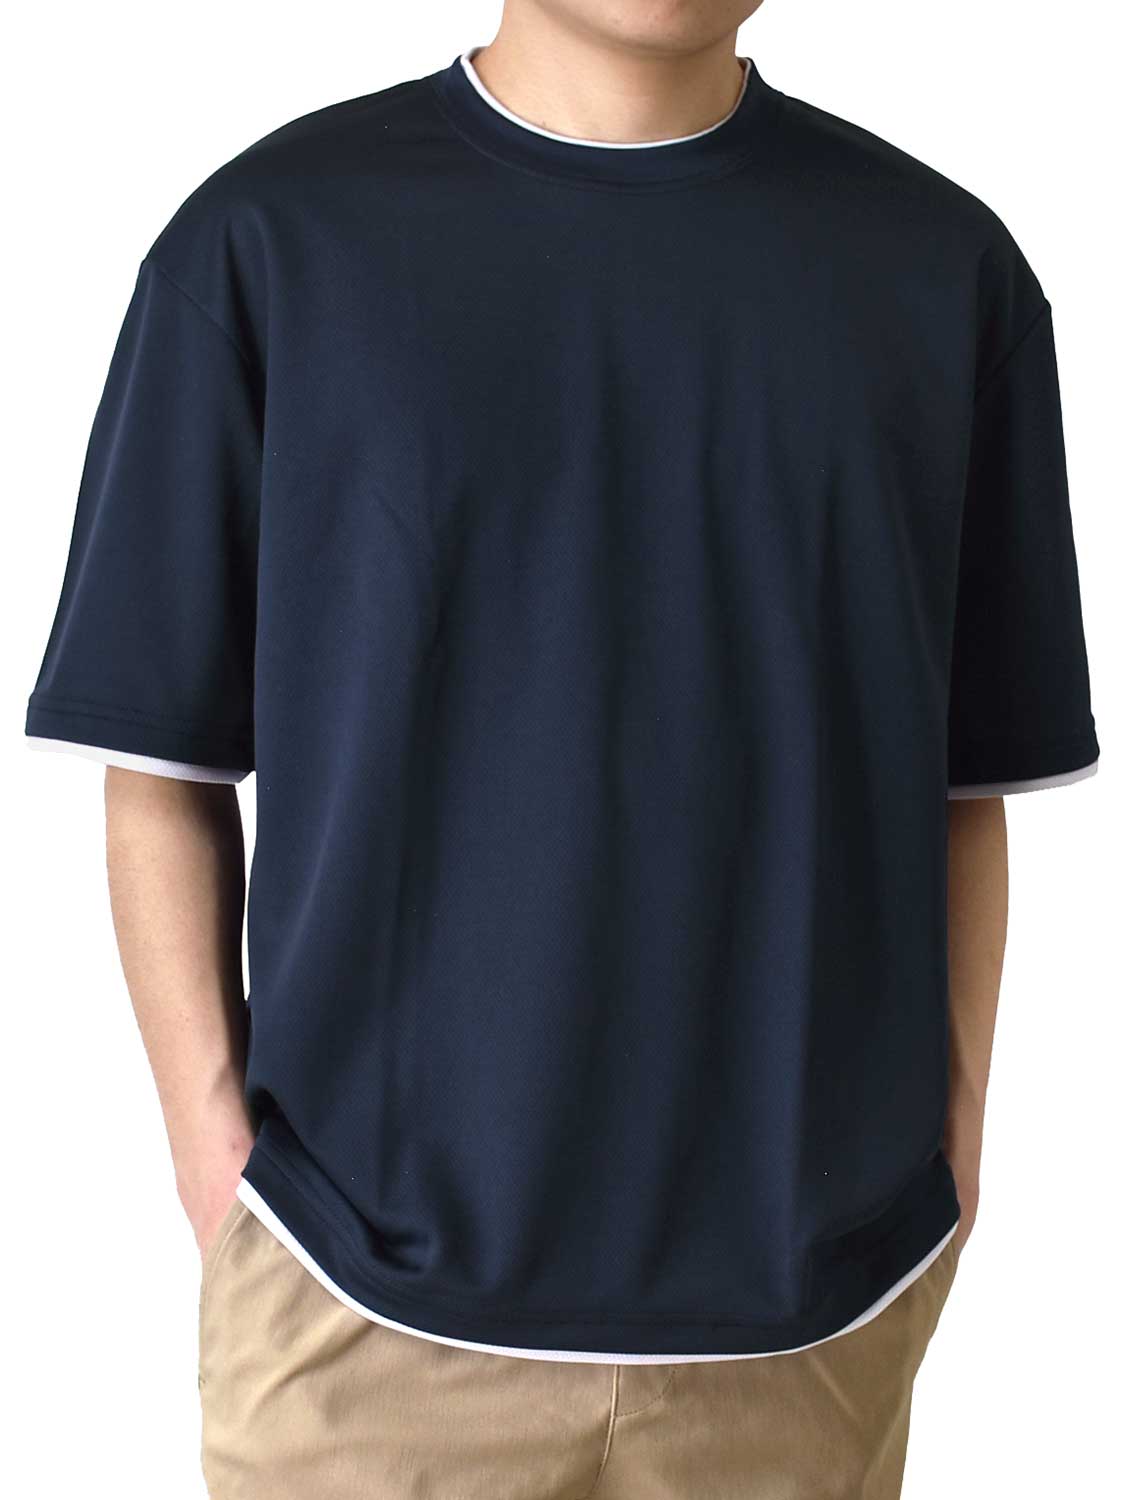 Tシャツ メンズ 5分袖 ドライストレッチ 重ね着風 ワイドシルエット クルーネック 送料無料 通販...